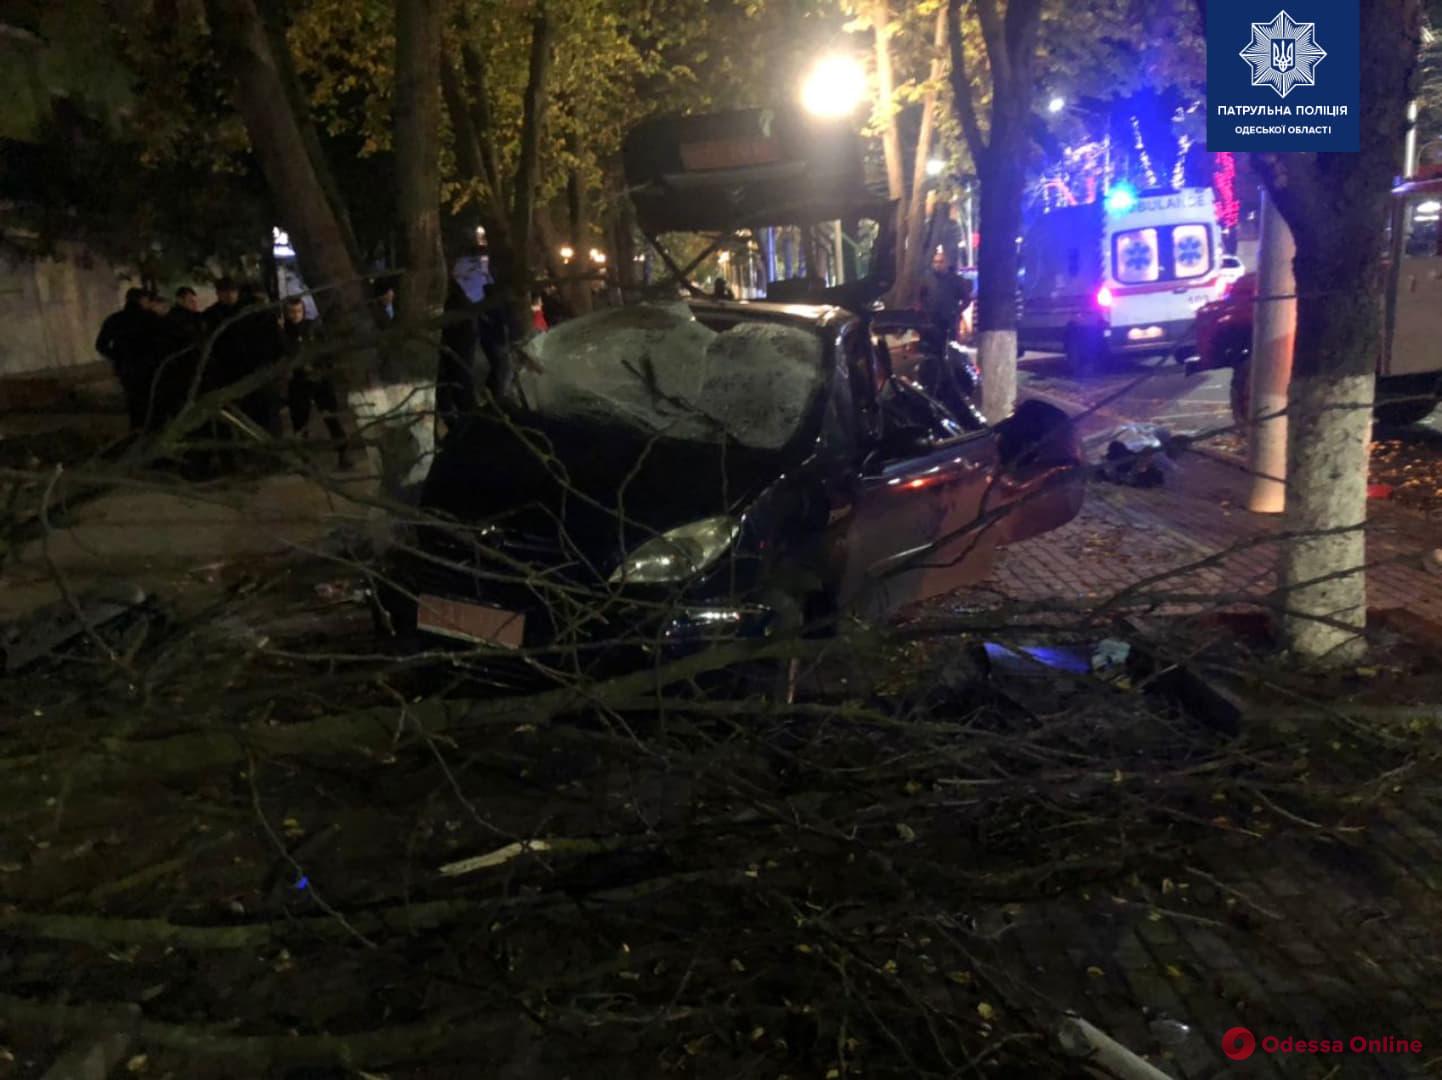 Пьяное ДТП в Измаиле – двое погибших и трое пострадавших (видео, обновлено)